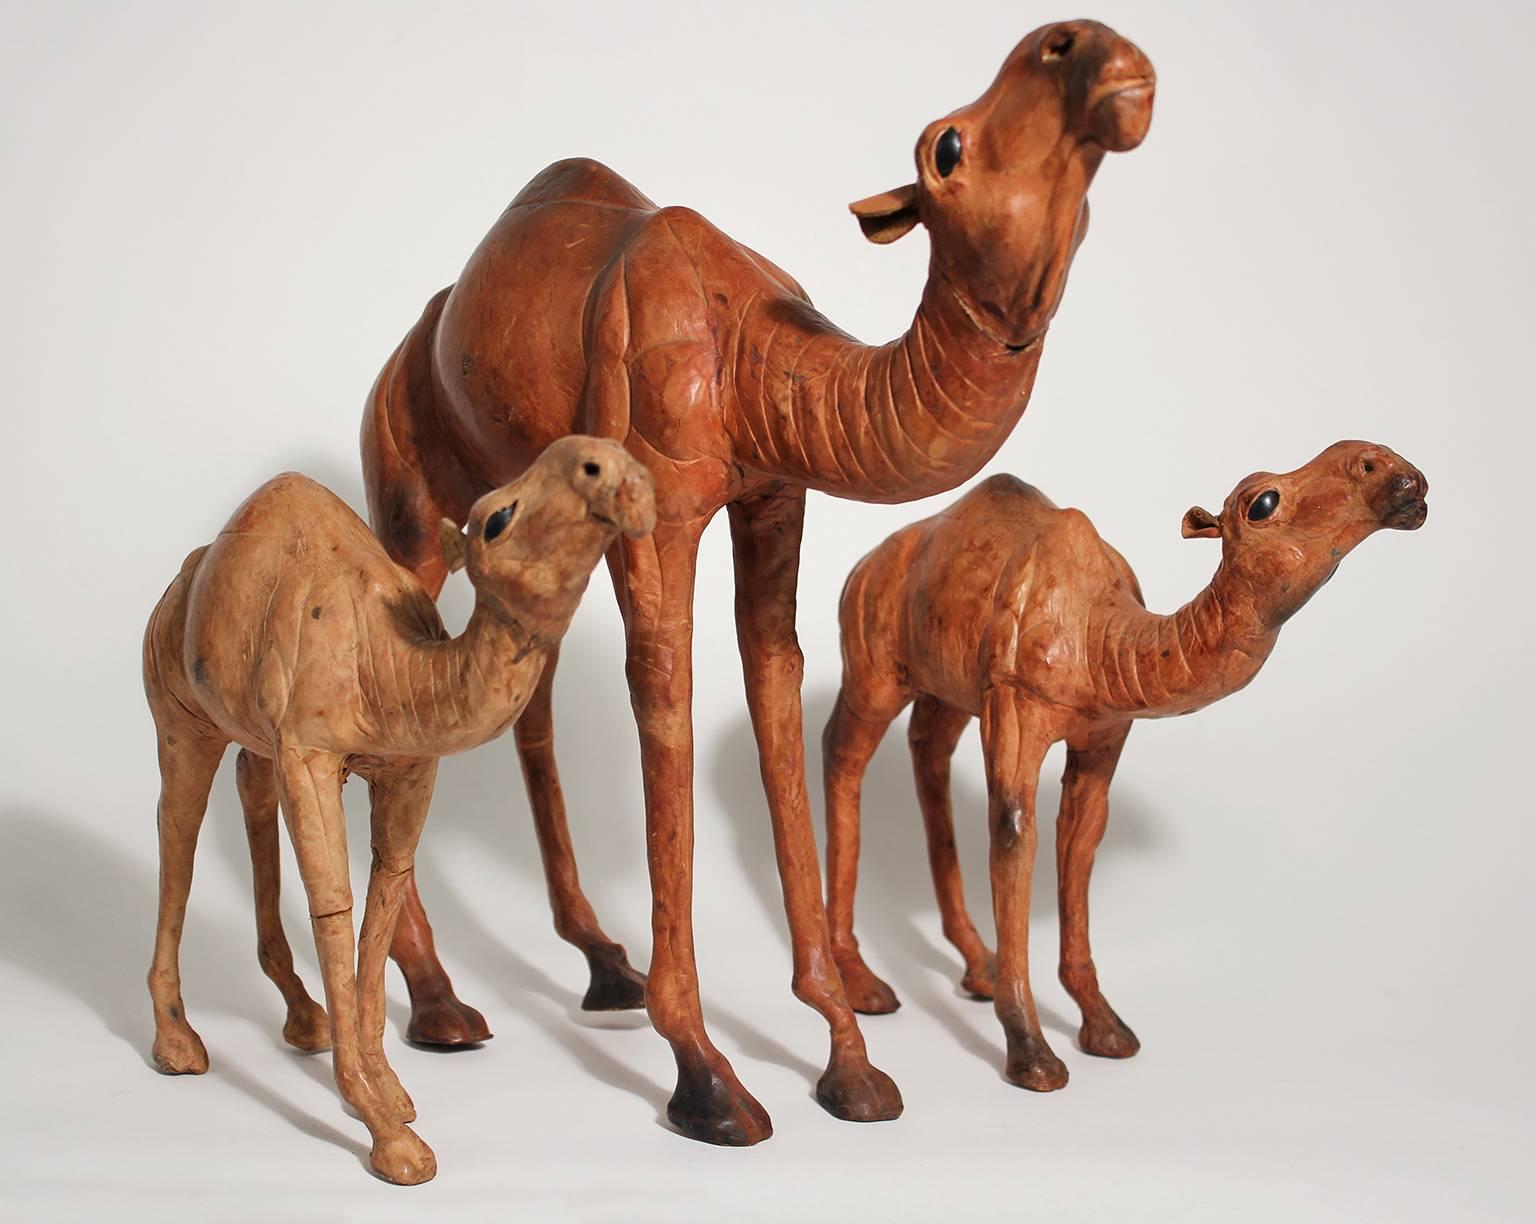 Ensemble très unique de trois figurines de chameaux italiens enveloppés de cuir. La surface extérieure est en cuir et les trois ont des yeux en verre. Les détails sont excellents. En bon état avec une usure normale due à l'âge. 
Le grand chameau